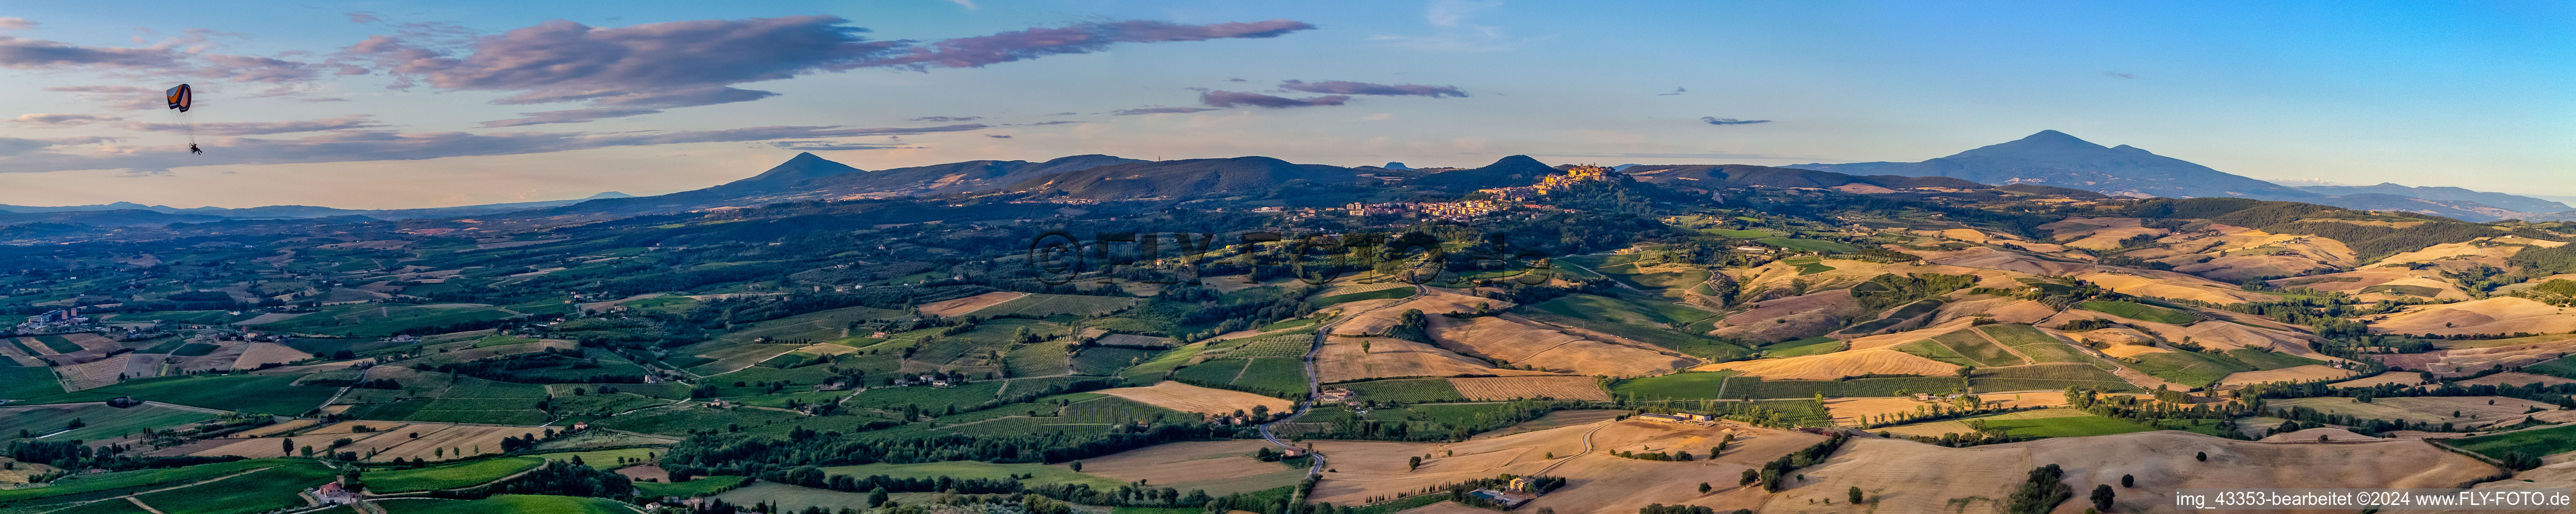 Vue aérienne de Panorama - perspective avec parapente des sommets dans le paysage rocheux et montagneux à Montepulciano dans le département Toscane, Italie